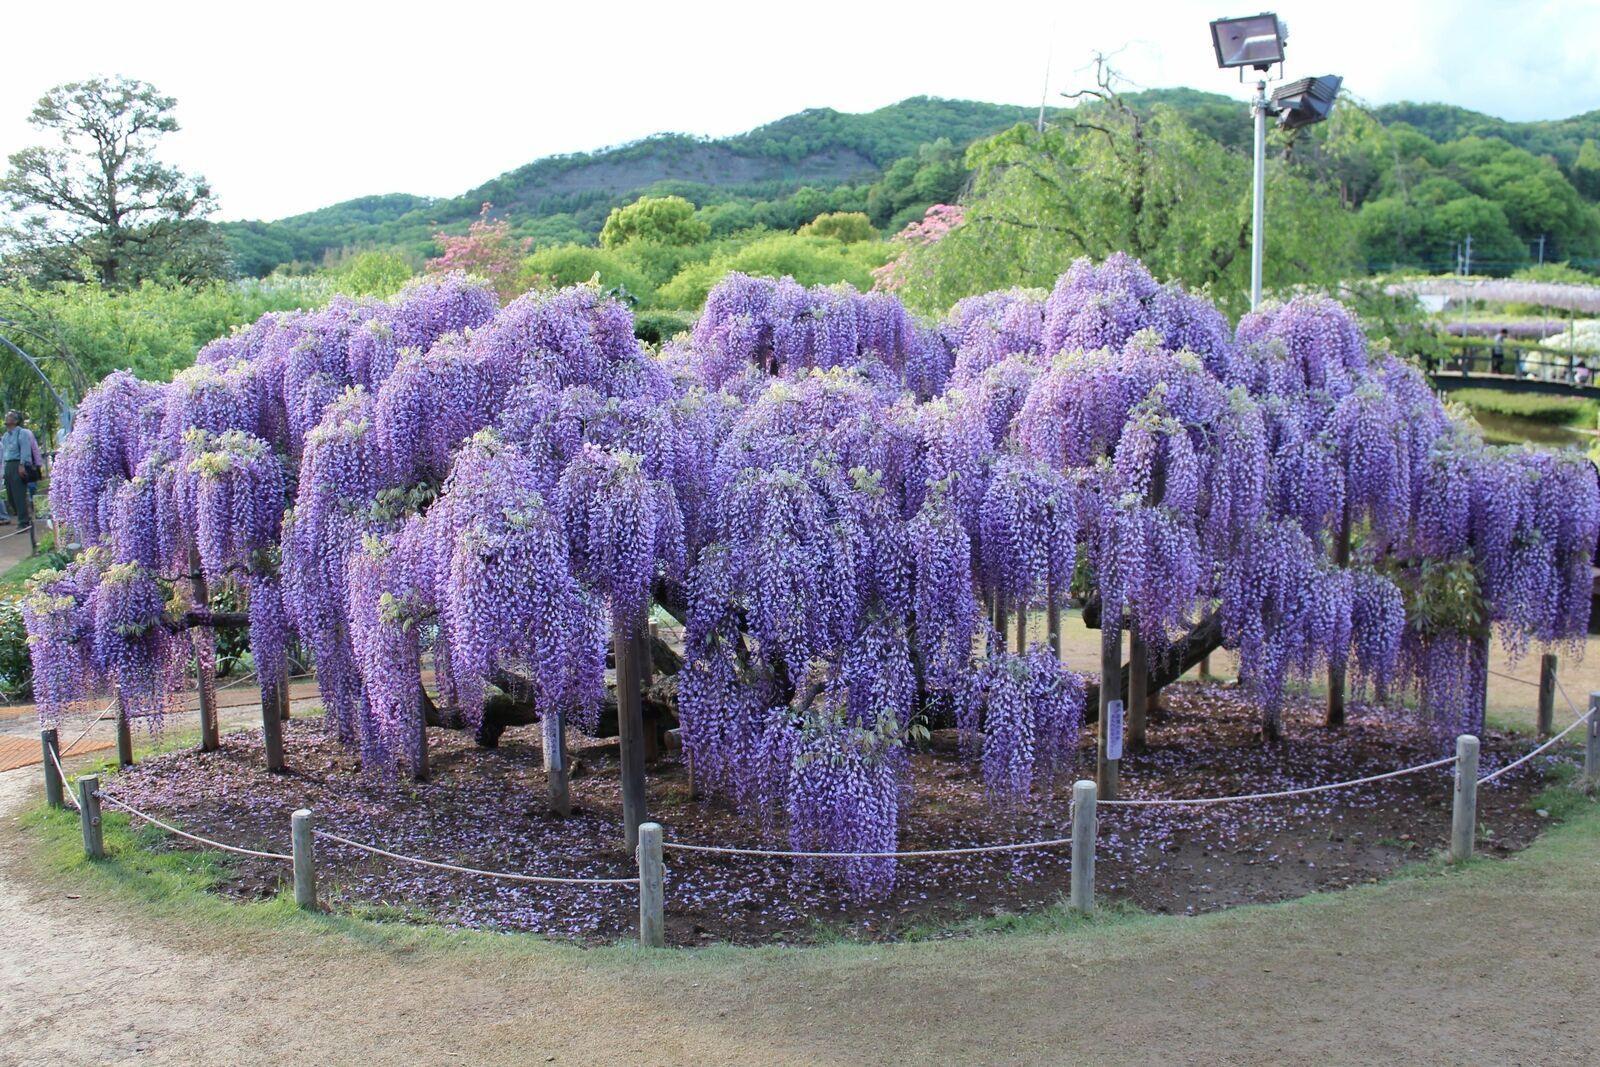 Purple Wisteria Tree/Vine - 6-12" Tall - Live Plant - Bareroot Seedling - The Nursery Center